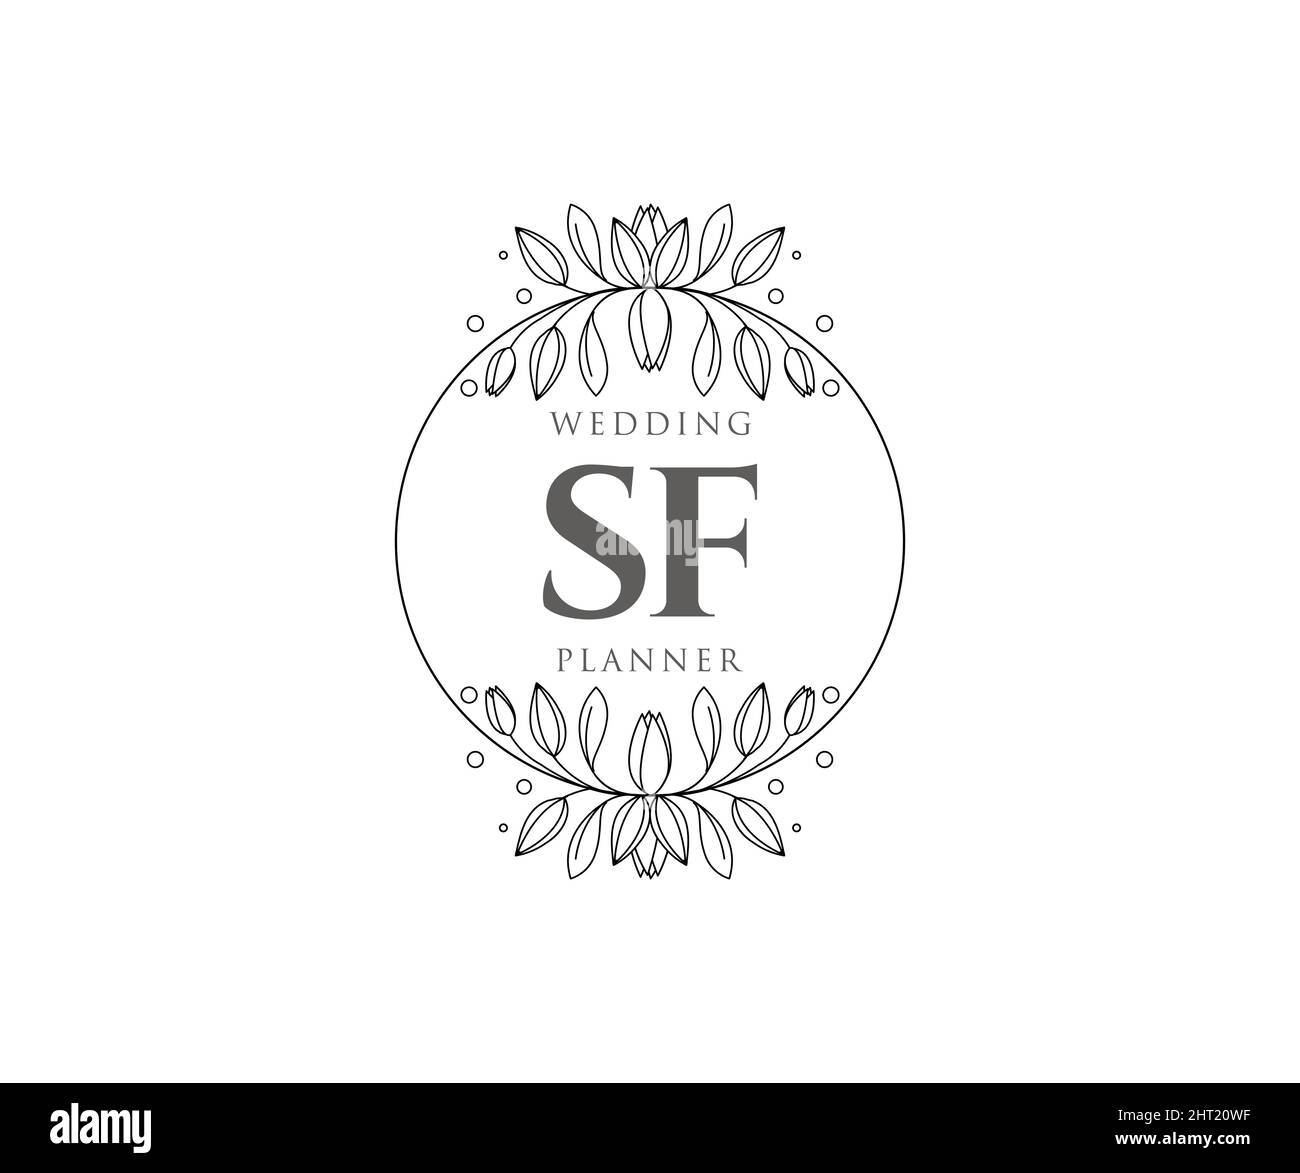 Personalised Wedding Logo Wedding Logo Design Couples Logo 